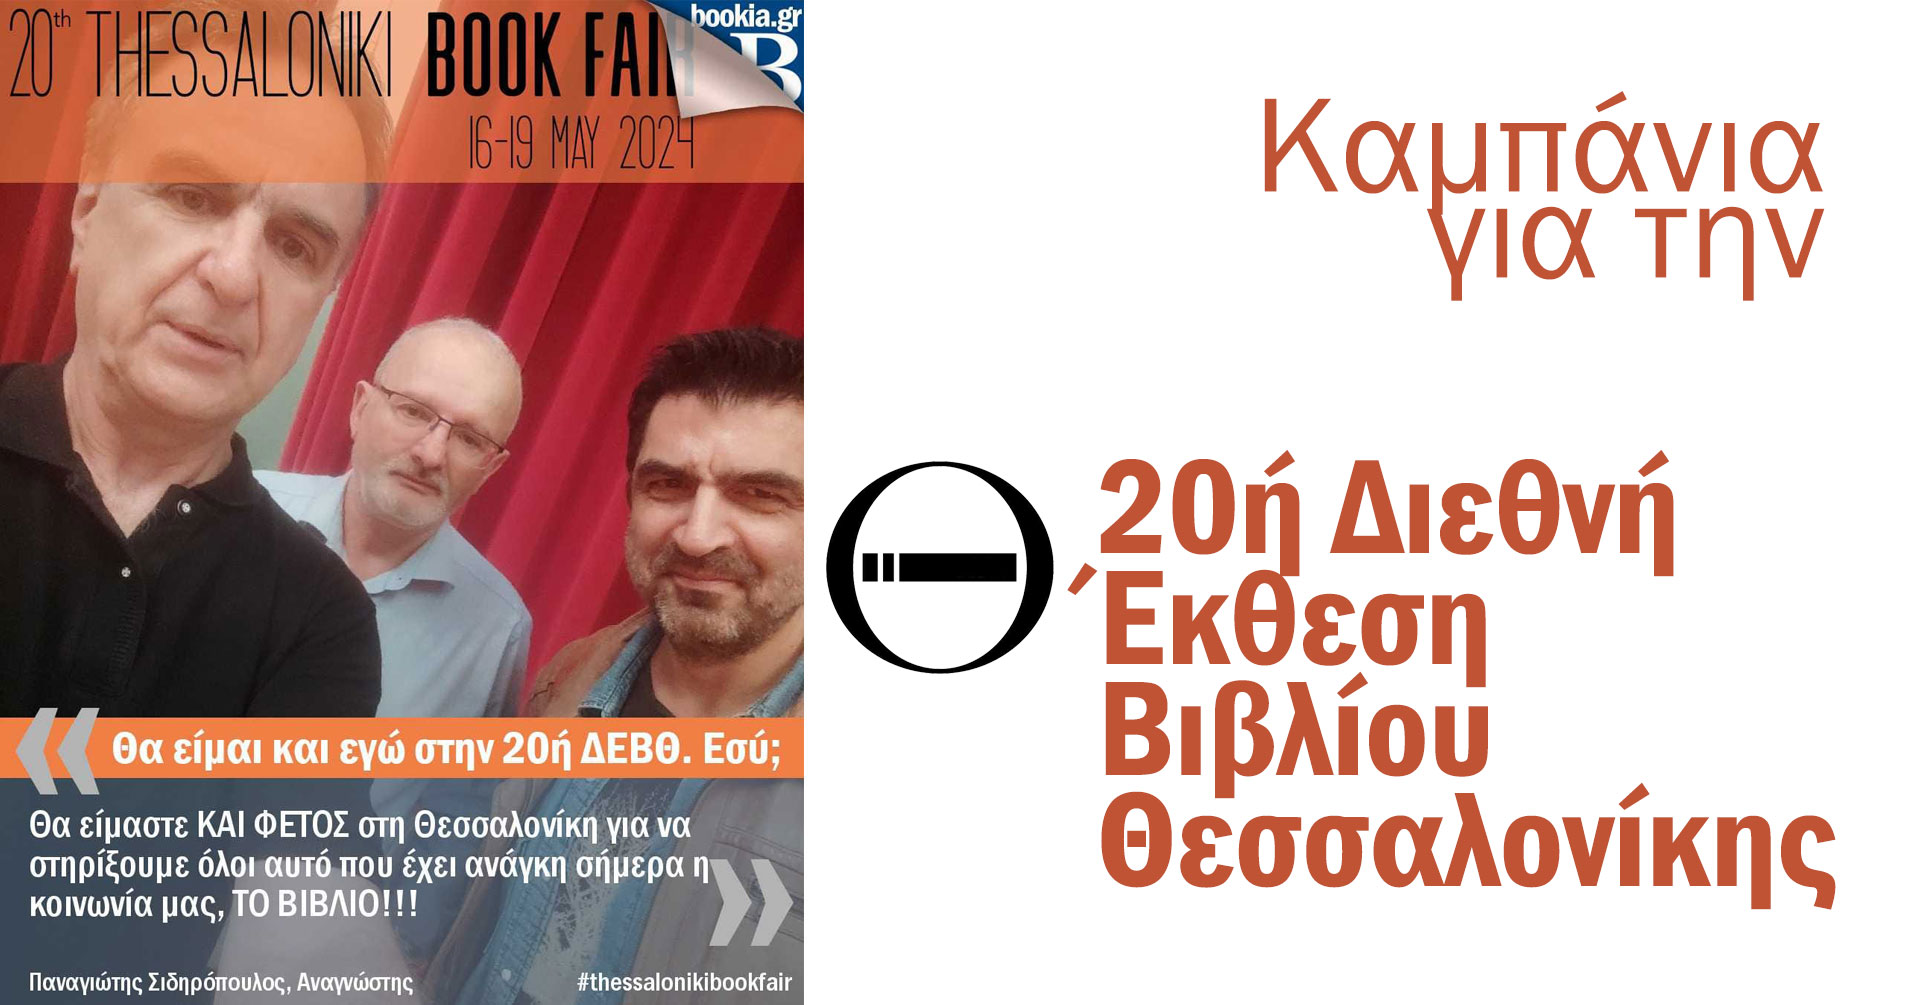 Καμπάνια για την 20ή Διεθνή Έκθεση Βιβλίου Θεσσαλονίκης